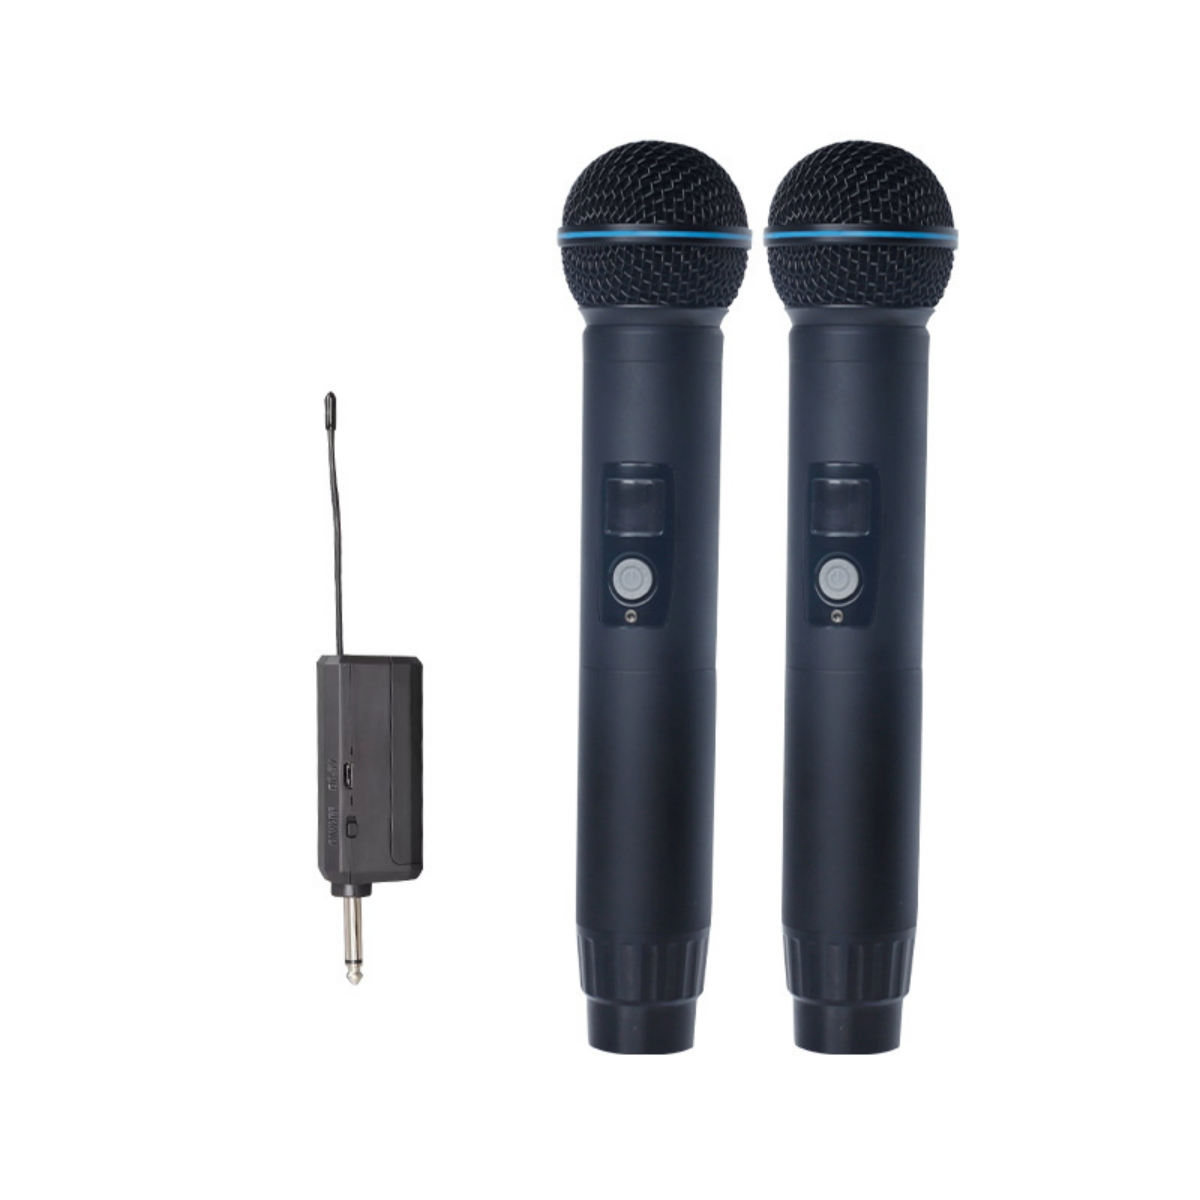 Bluetooth-Lautsprecher Wall Blau Portable Echo Hals Wireless SHAOKE Mikrofone, Wearable Subwoofer